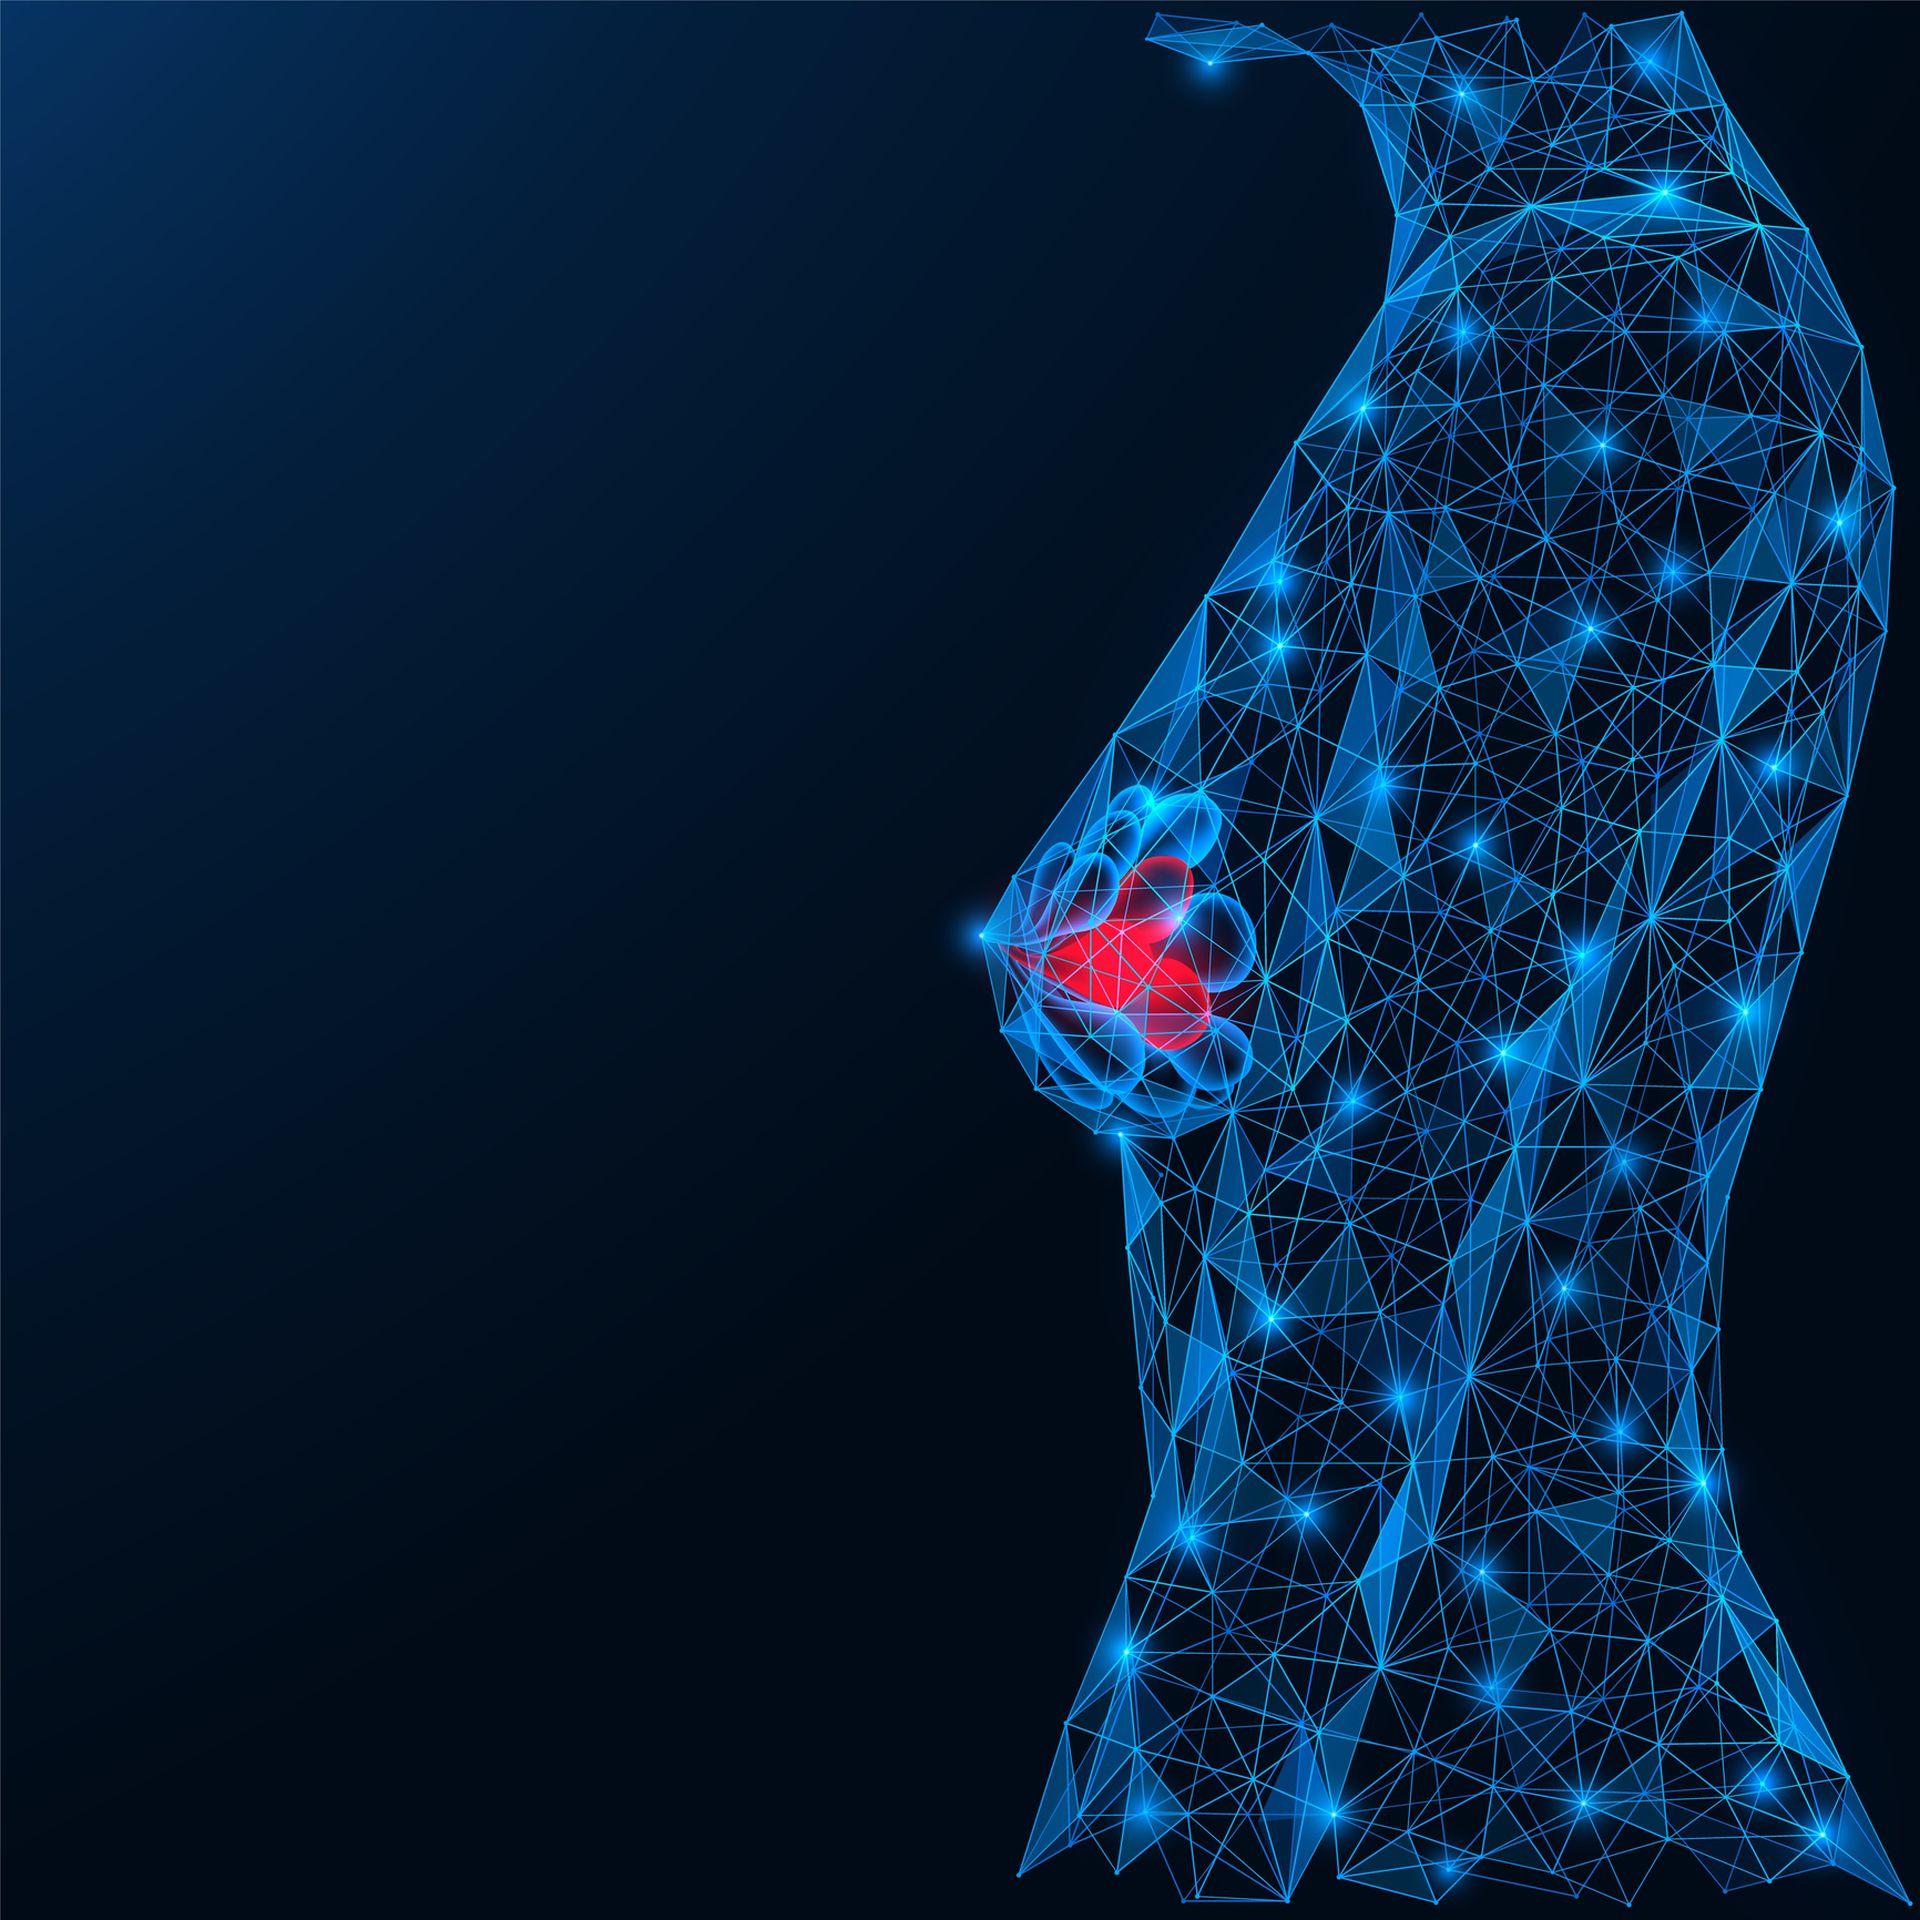 Vaginale Östrogene erhöhen potenziell das Rezidivrisiko beim HR+ Brustkrebs wenn sie mit Aromatasehemmern kombiniert werden.